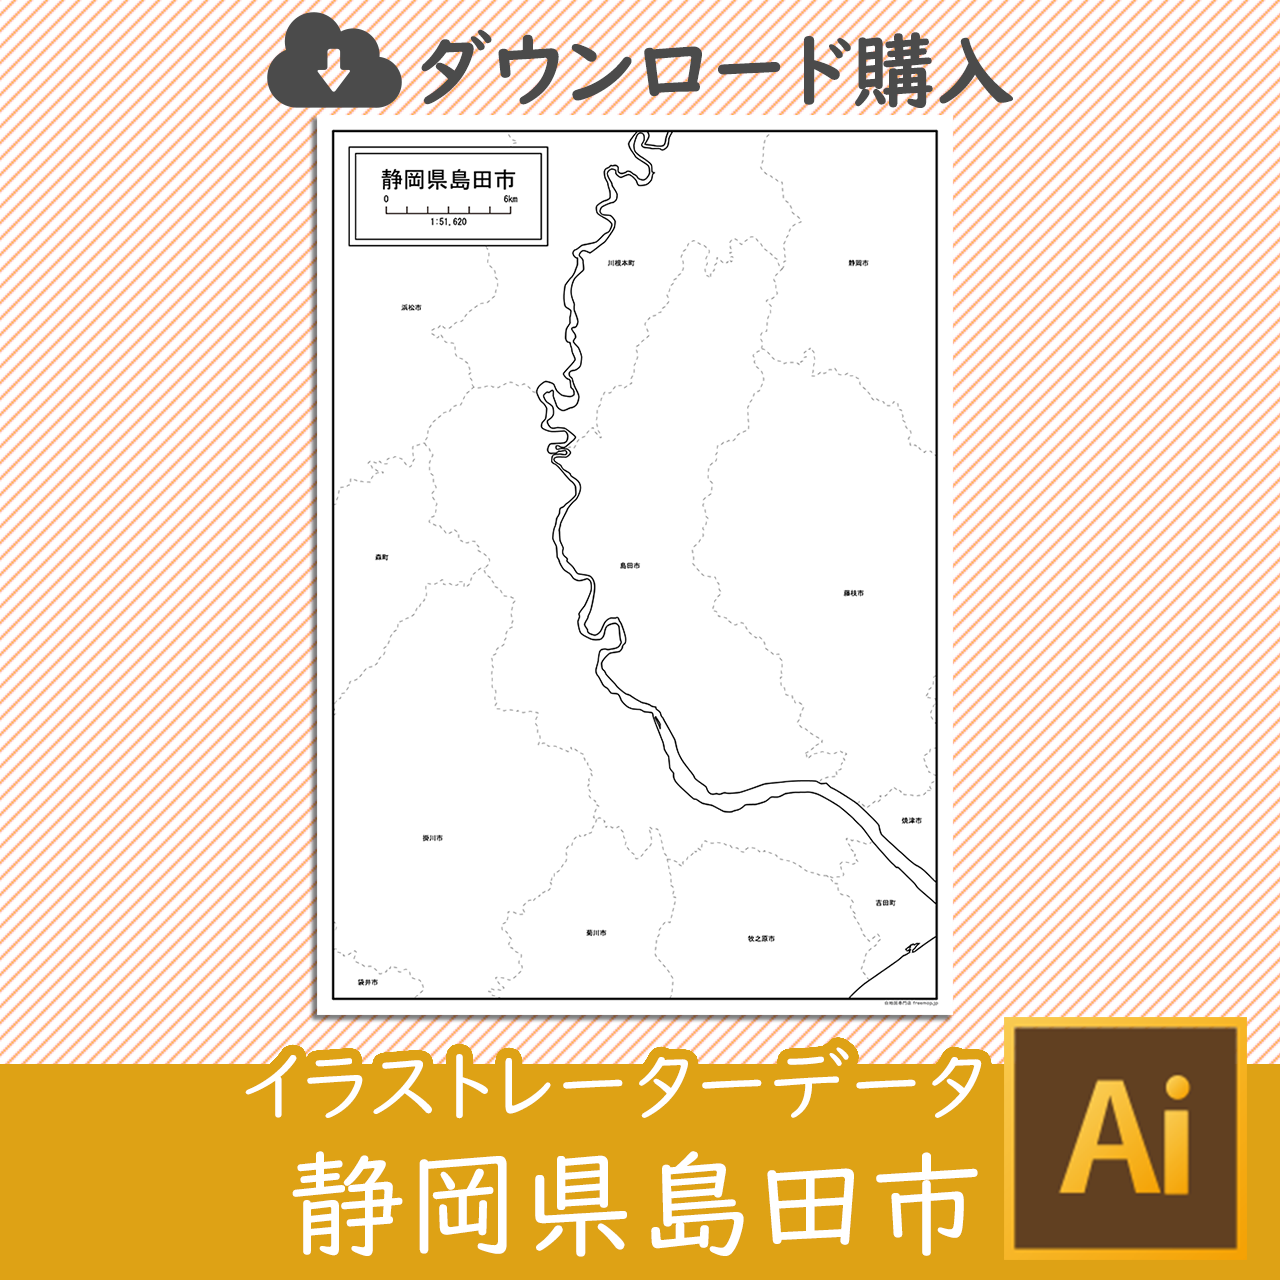 島田市のaiデータのサムネイル画像